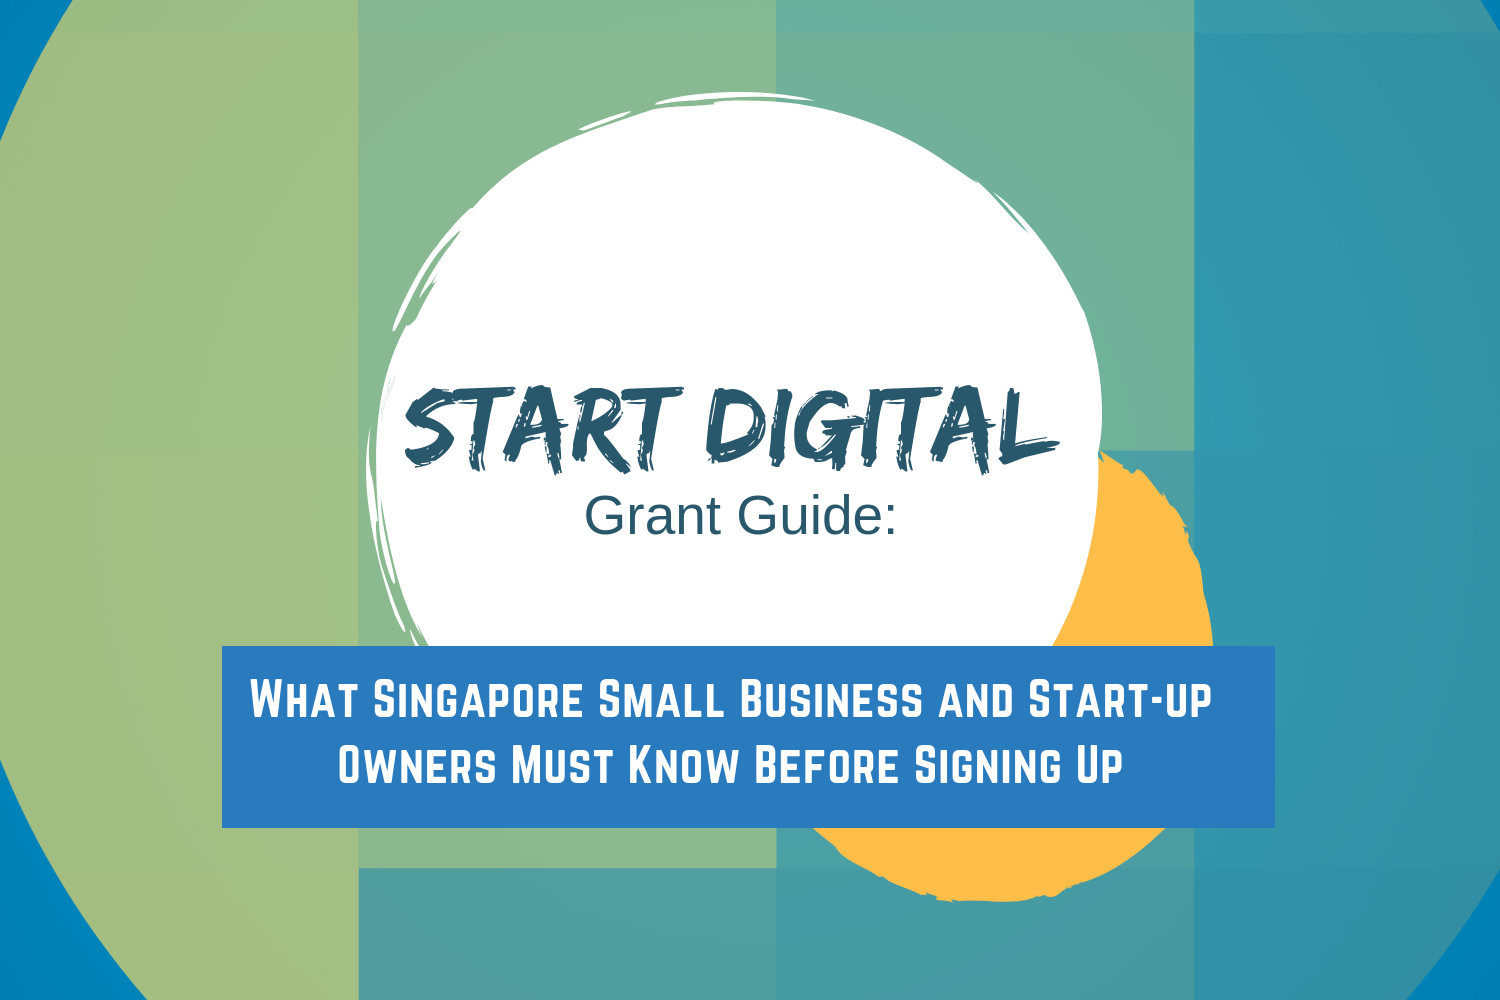 Start Digital Grant Guide